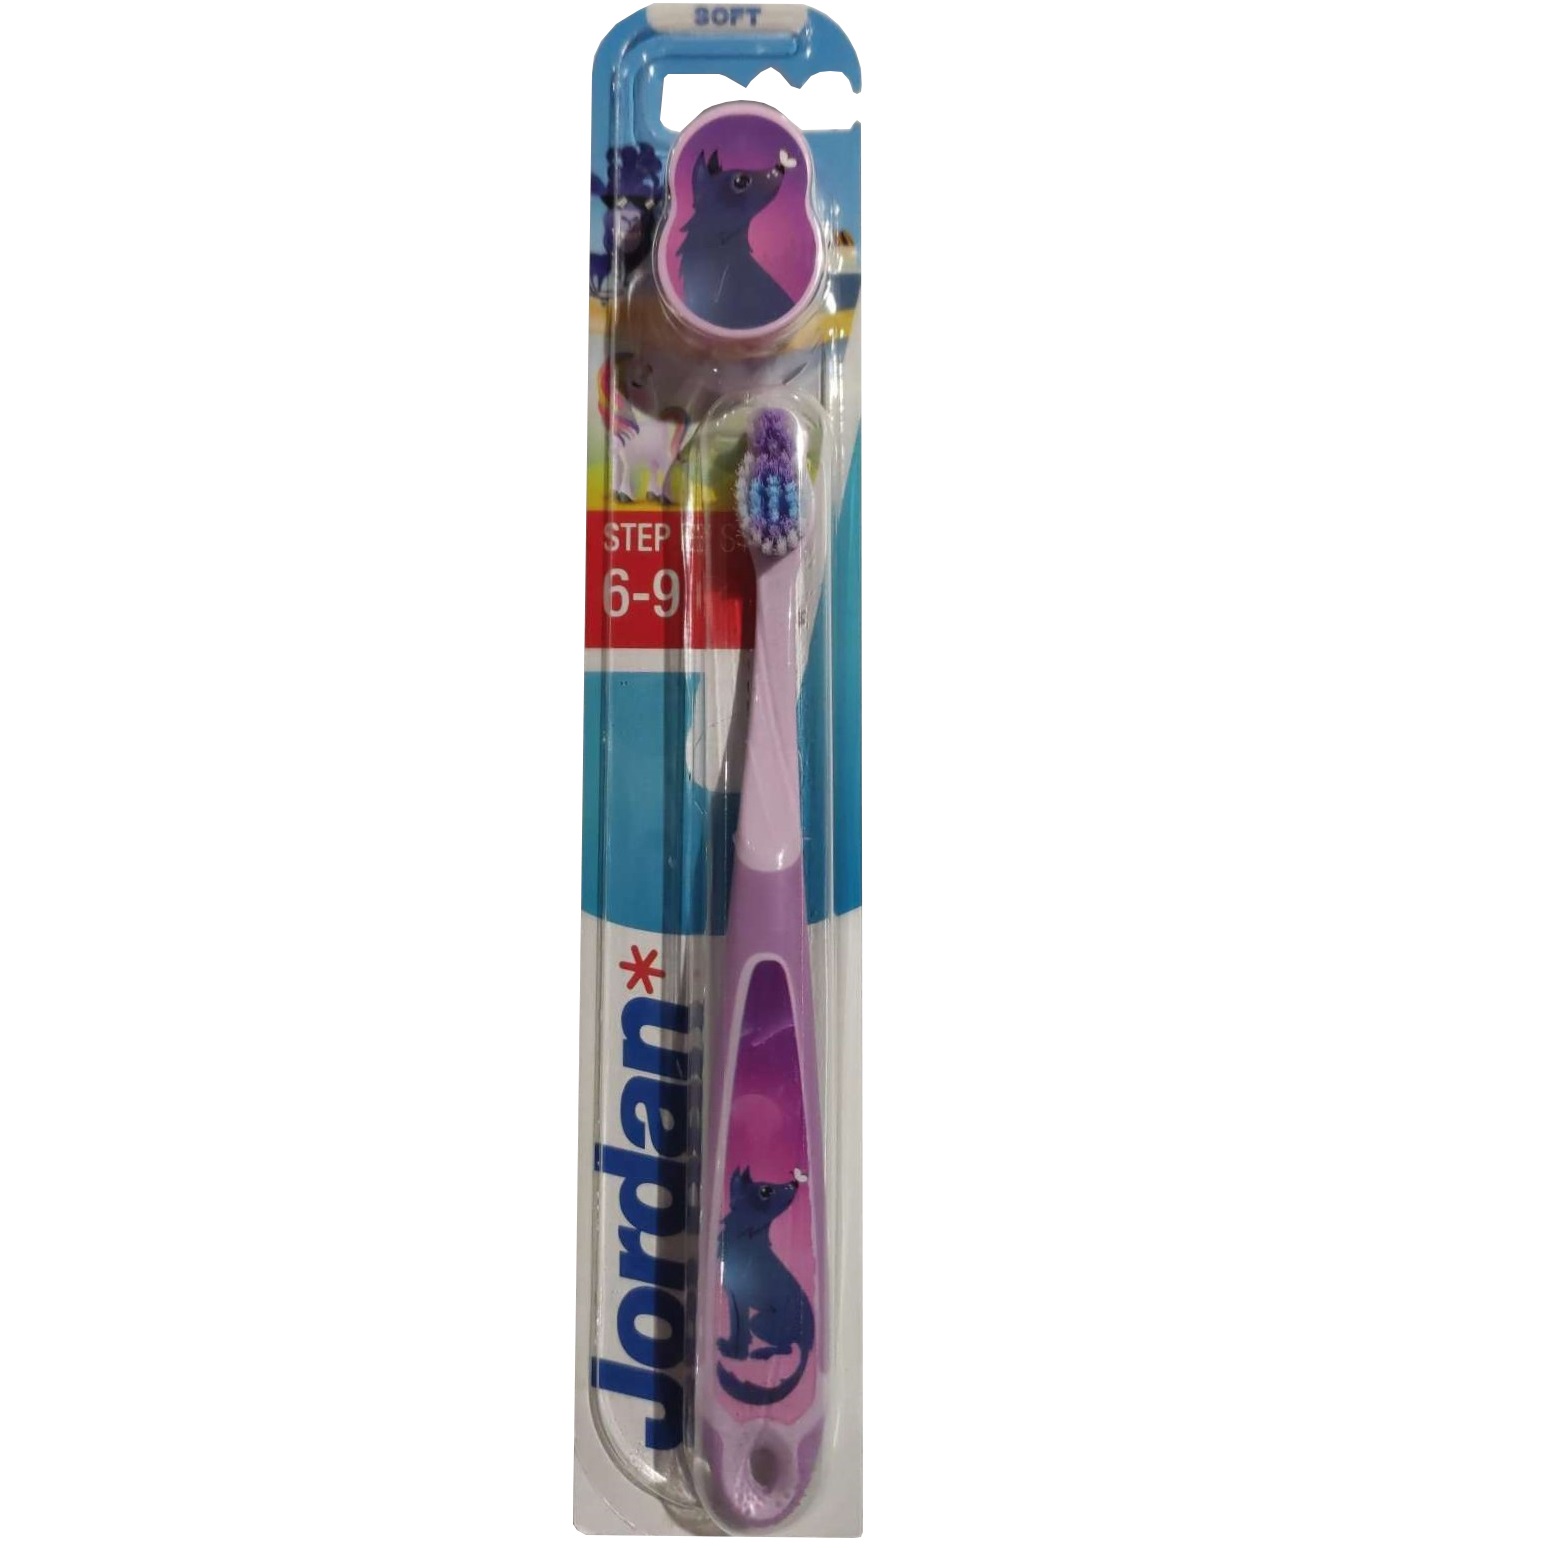 Дитяча зубна щітка Jordan Step 3, 6 - 9 років, м'яка, фіолетовий - фото 1